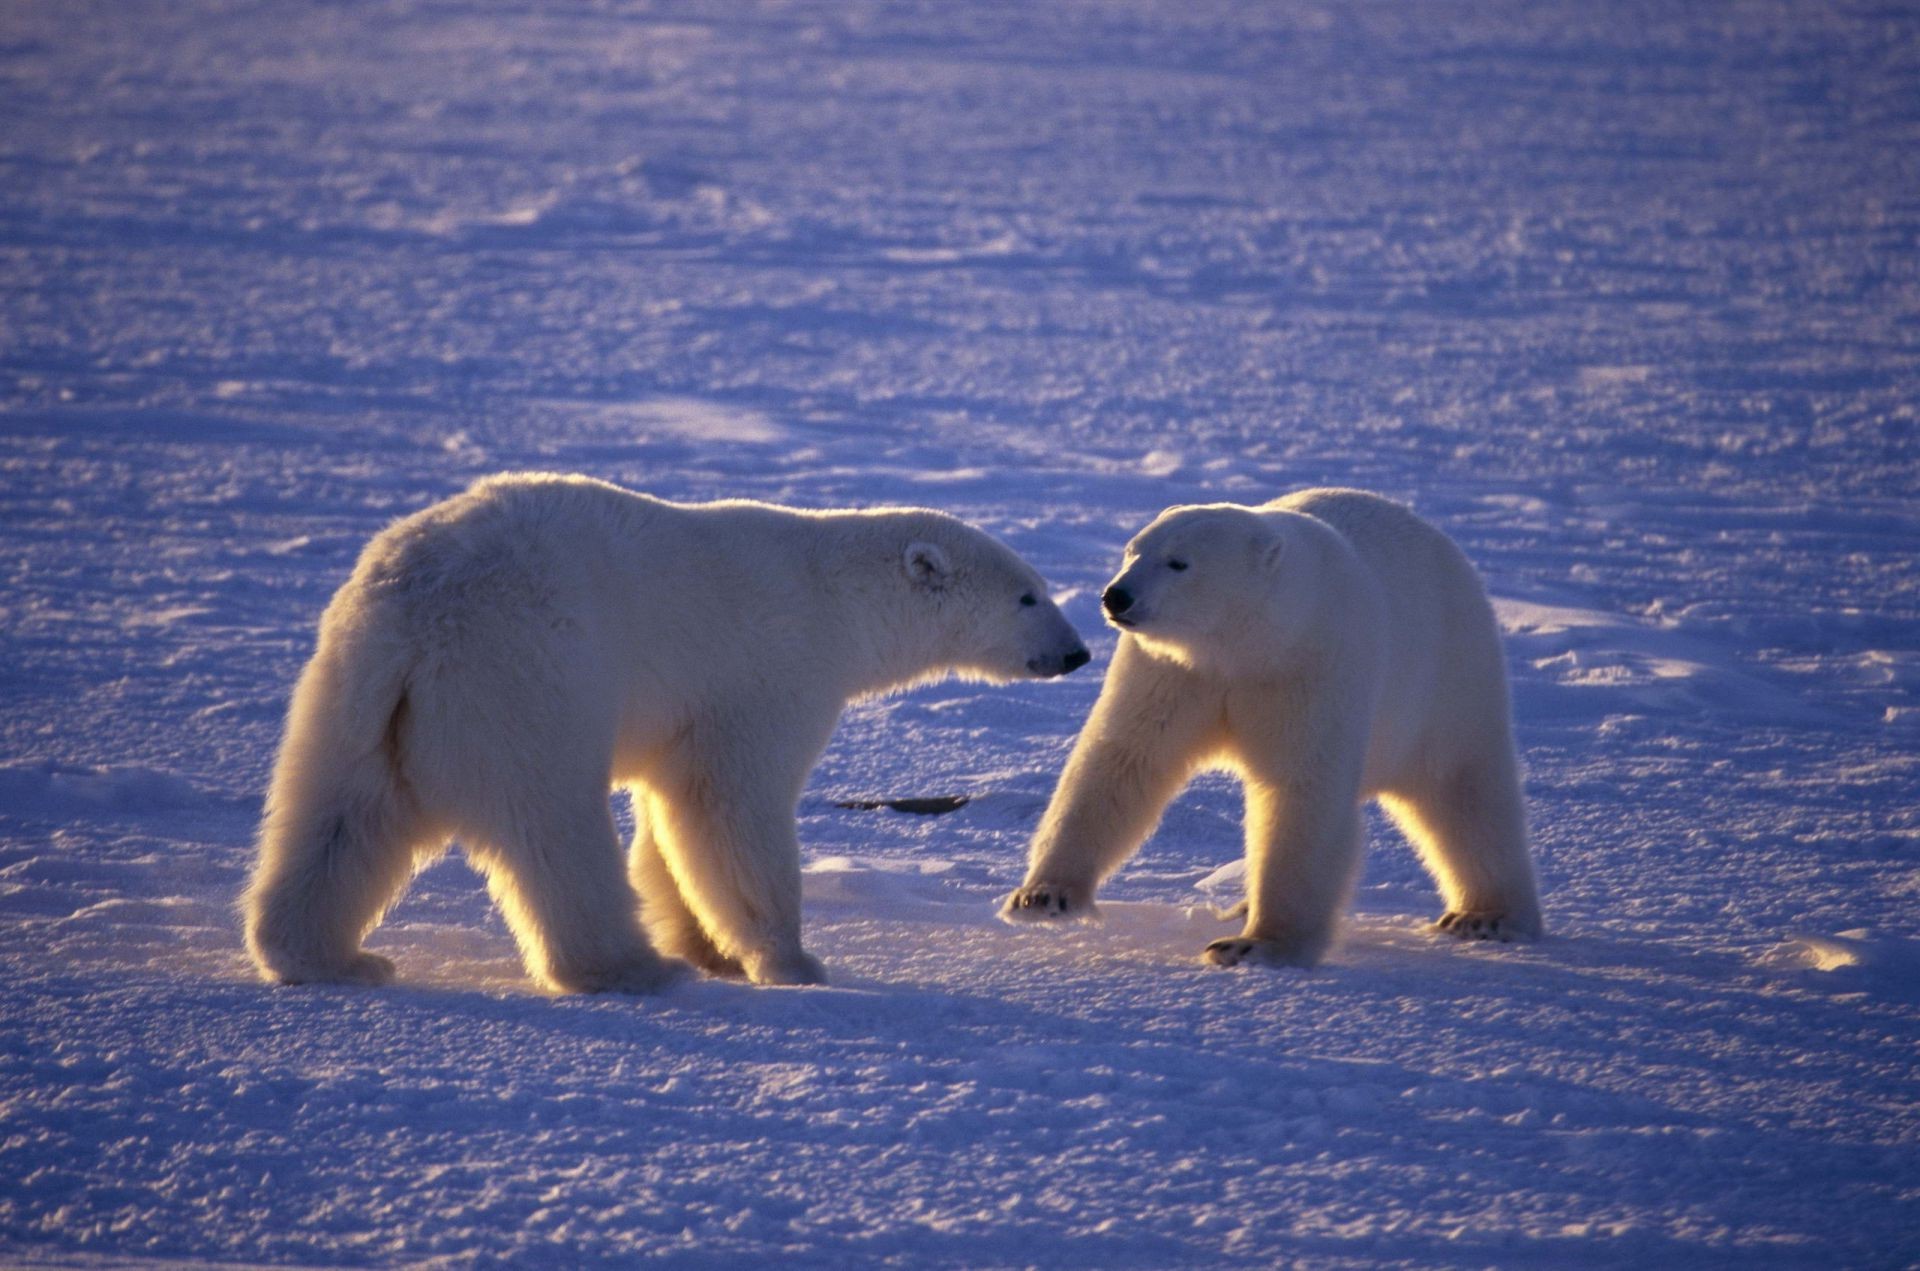 медведи снег морозный зима млекопитающее лед дикой природы на открытом воздухе воды холодная два дневной свет вид сбоку